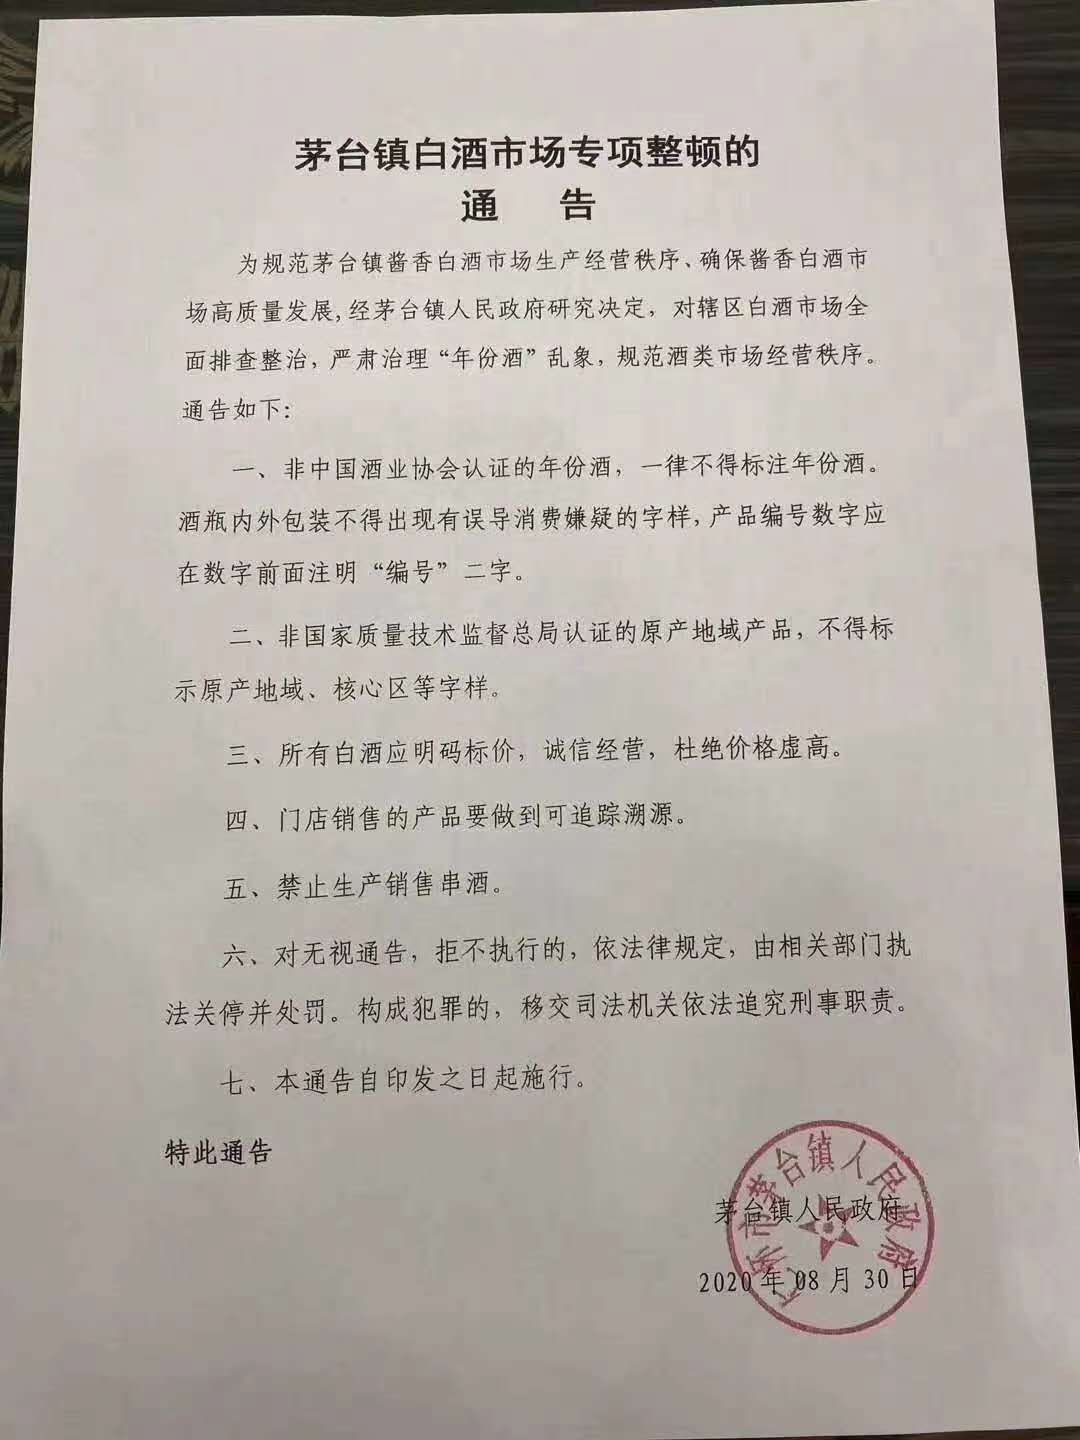 网传茅台镇人民政府签发的白酒市场专项整顿的通告